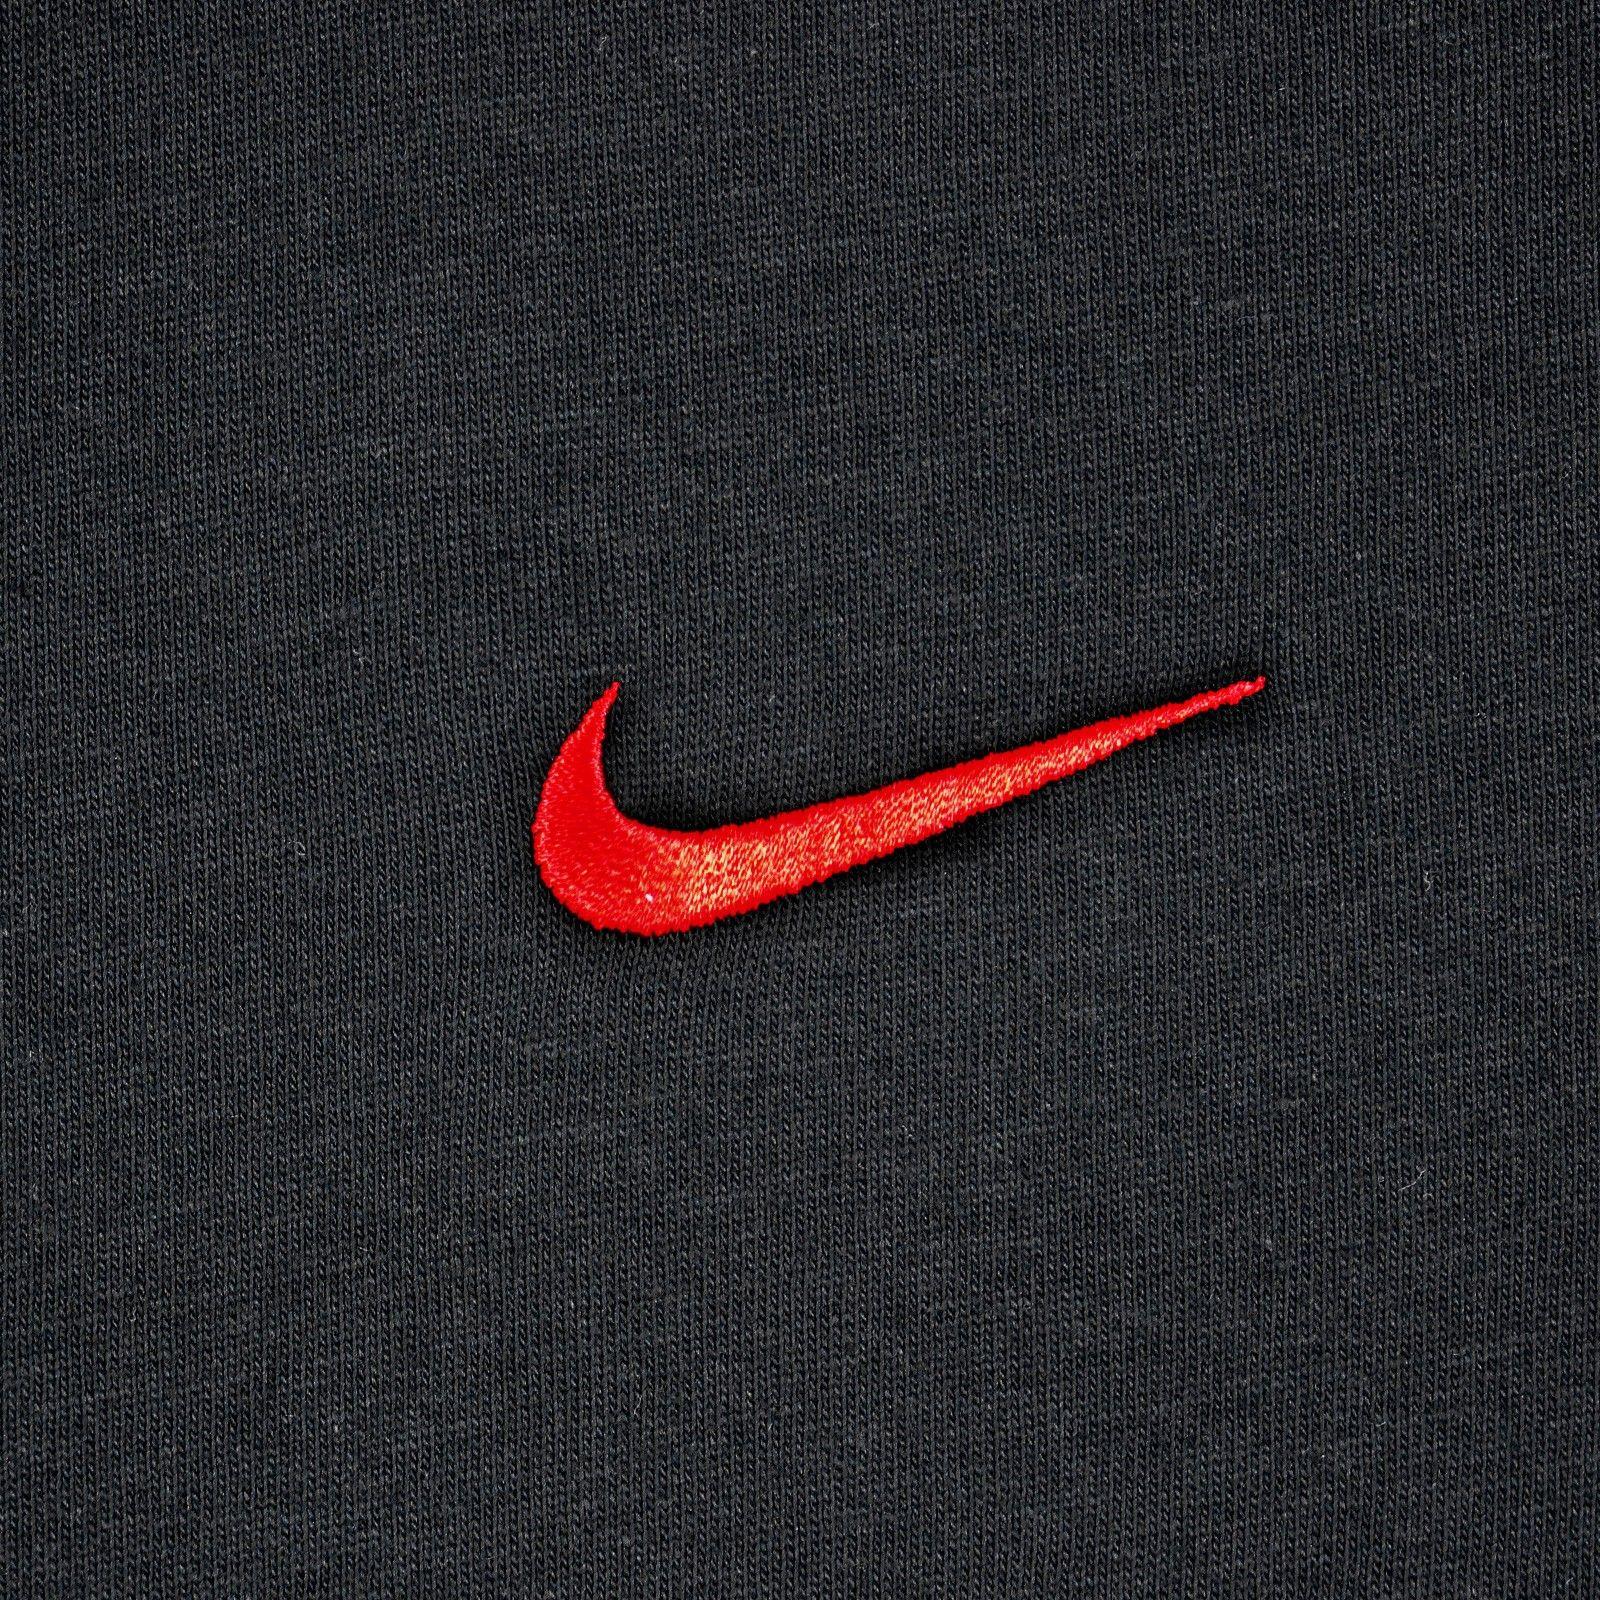 Black and Red Nike Logo - Men's Nike T-Shirt - Nike Swoosh Tee - Black - Red Tick | ACTIVEWEAR ...